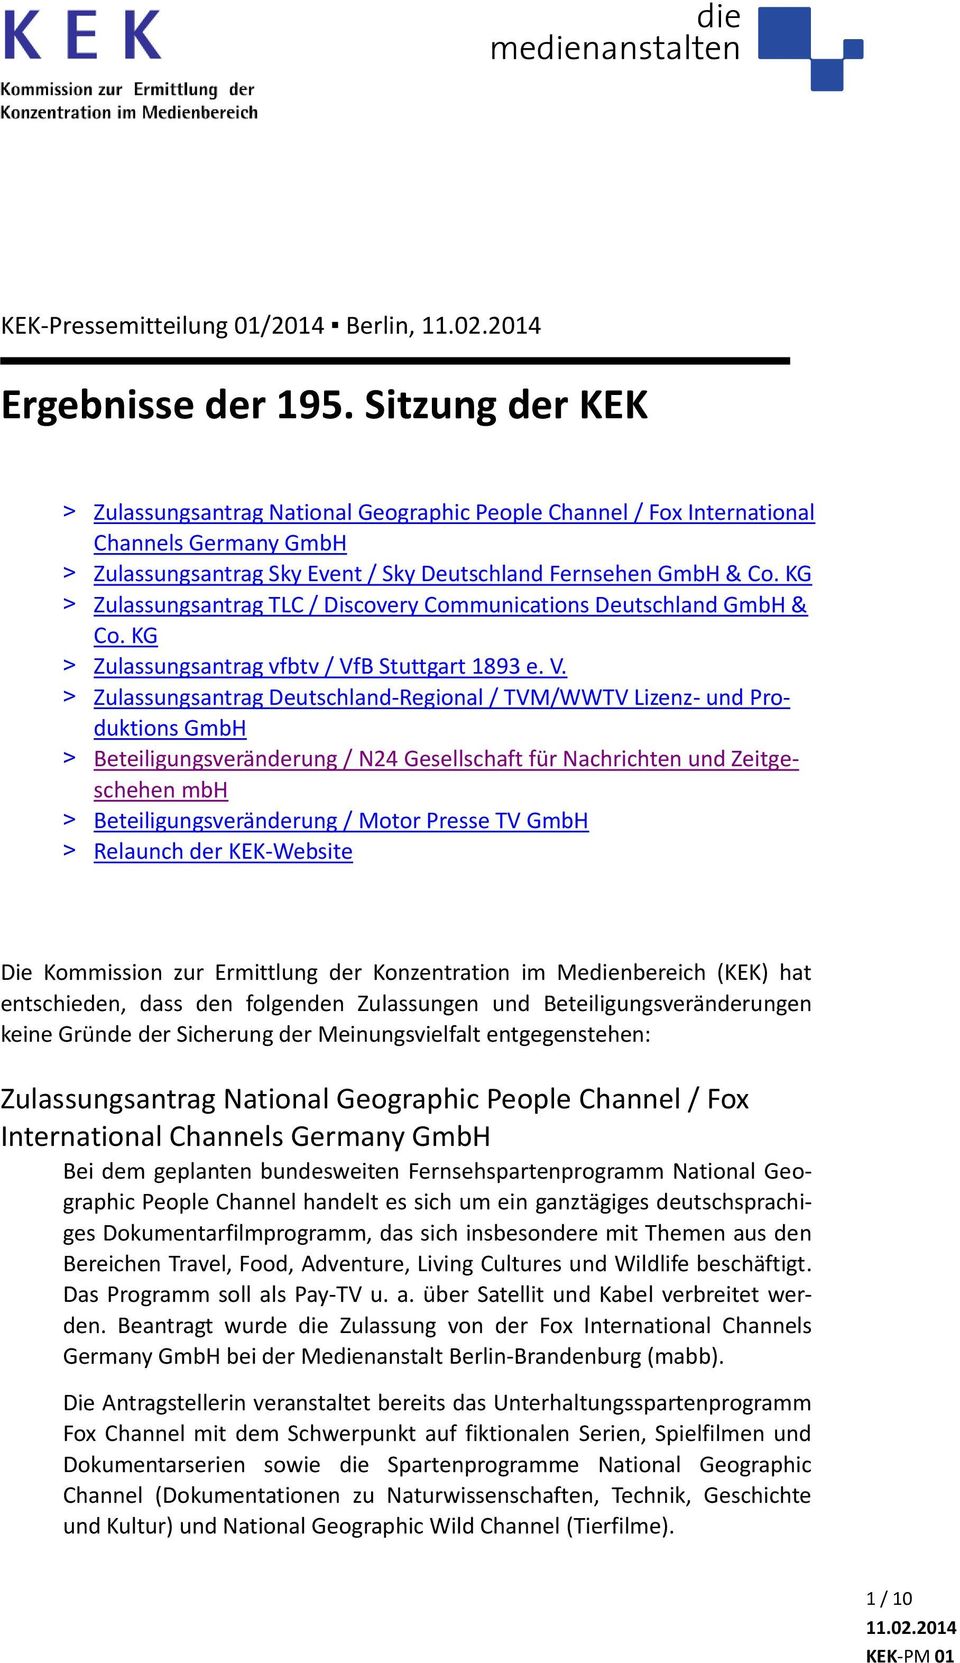 Communications Deutschland & Co. KG > Zulassungsantrag vfbtv / Vf